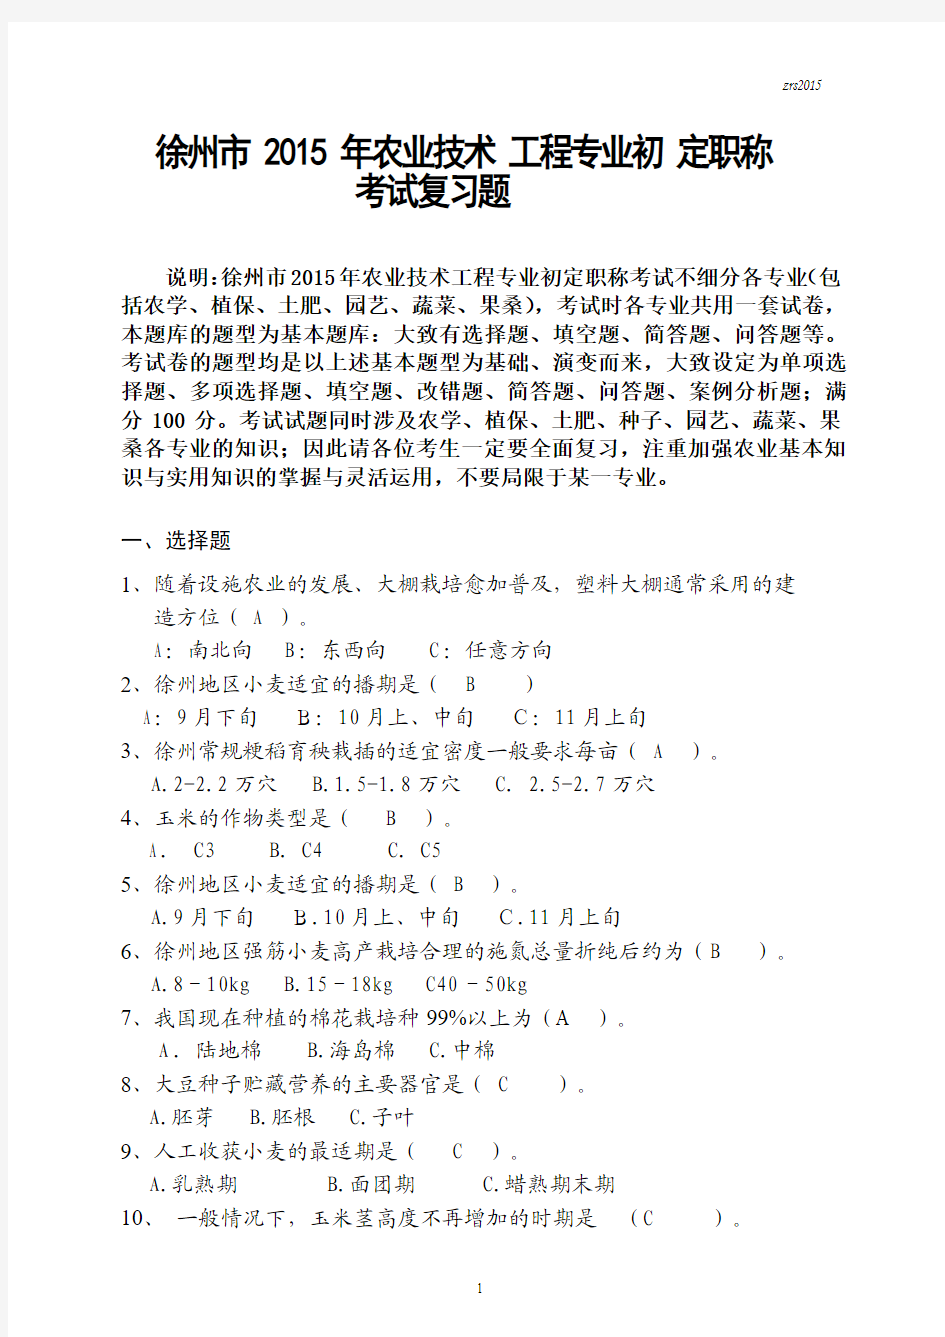 徐州市2015年农业系列初级职称考试复习题答案